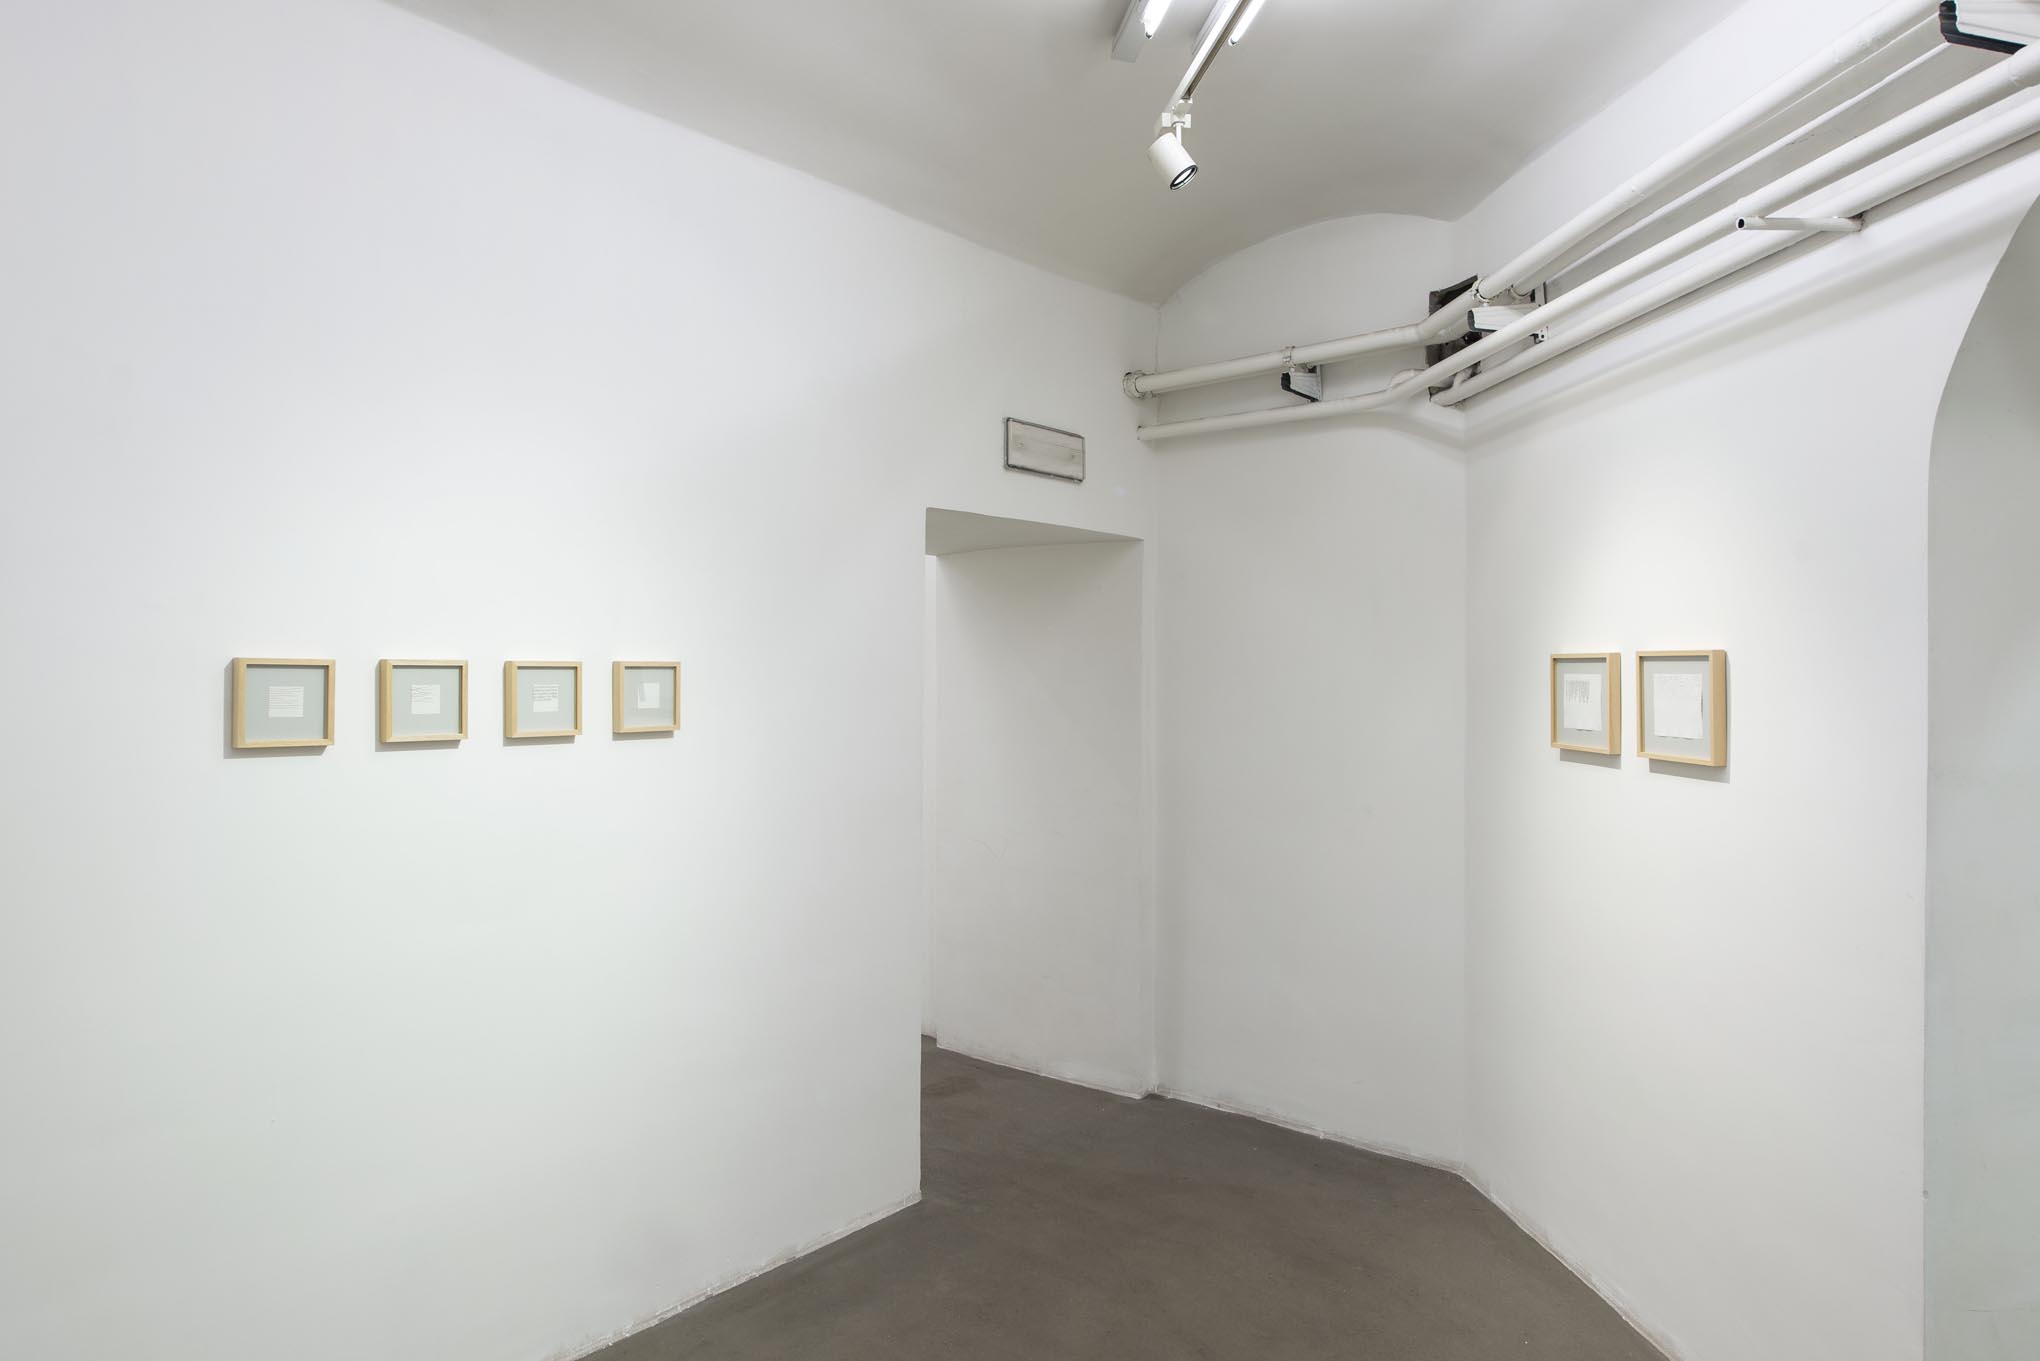 Giorgio Griffa: Works on Paper. Installation view presso Fondazione Giuliani, foto di Giorgio Benni